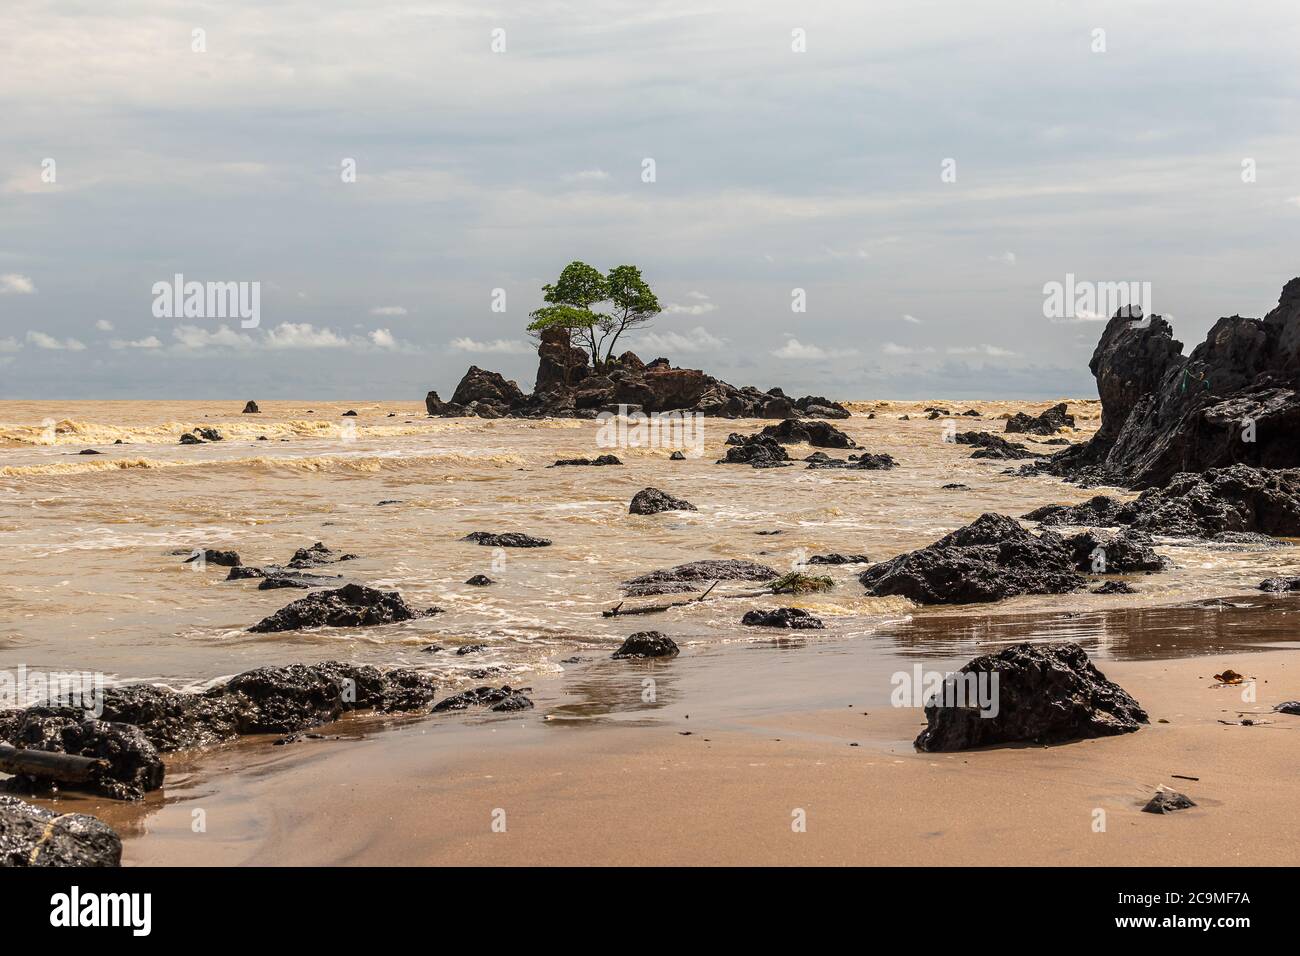 La côte d'or de l'Afrique avec la mer jaune et une île avec des roches noires où un arbre pousse dans des conditions difficiles, l'endroit est situé au Ghana Afrique de l'Ouest Banque D'Images